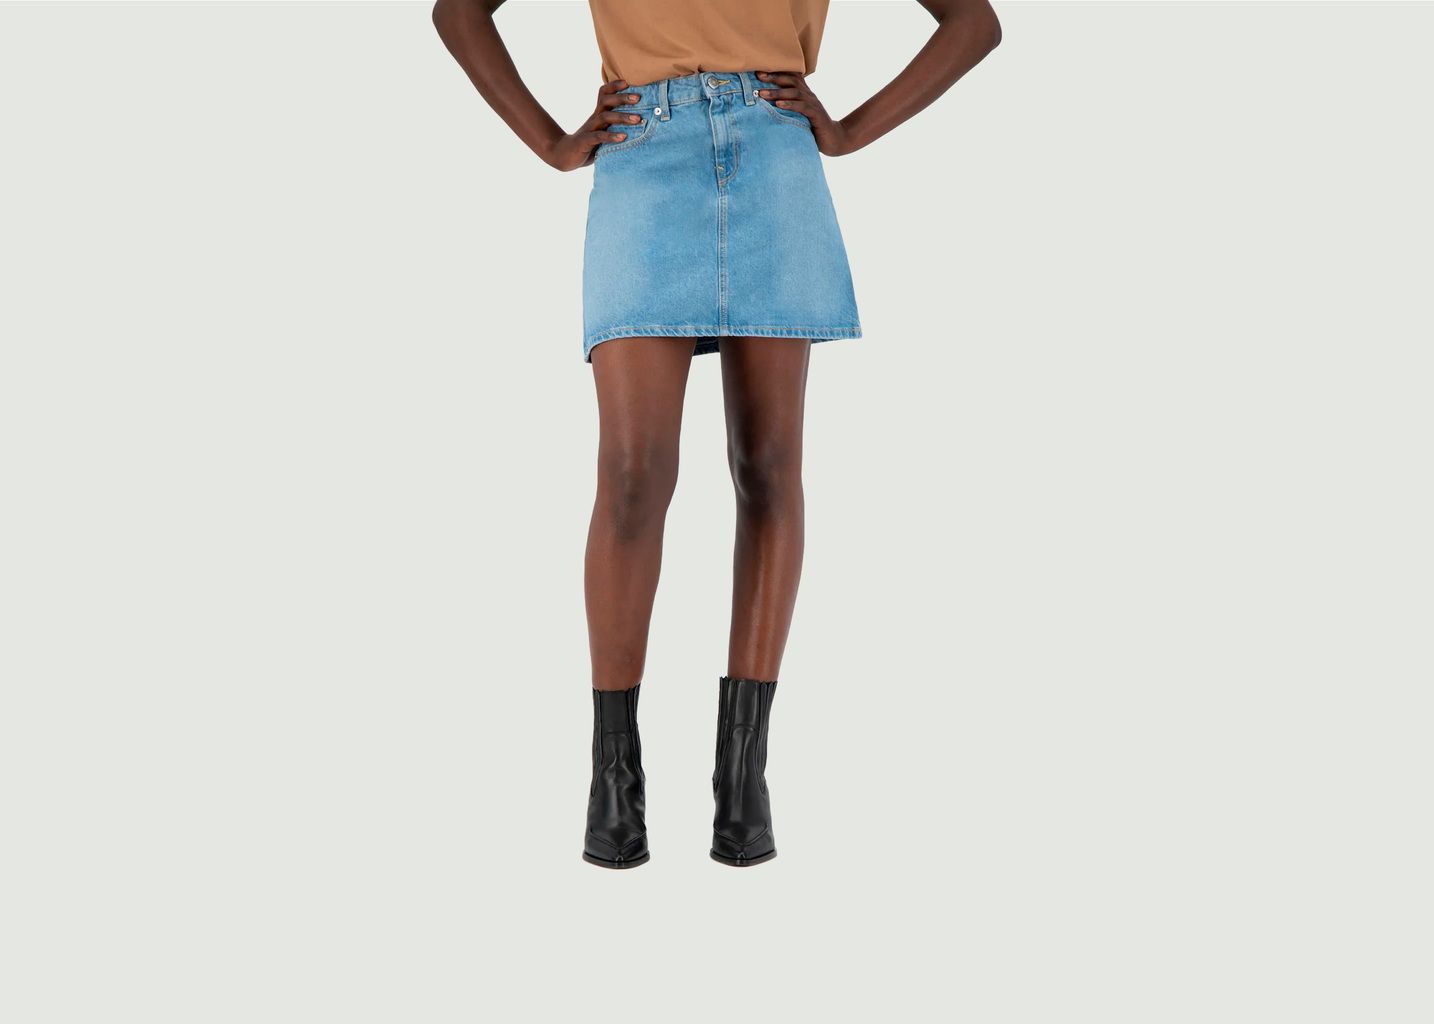 Skirt Sophie Rocks - Mud Jeans